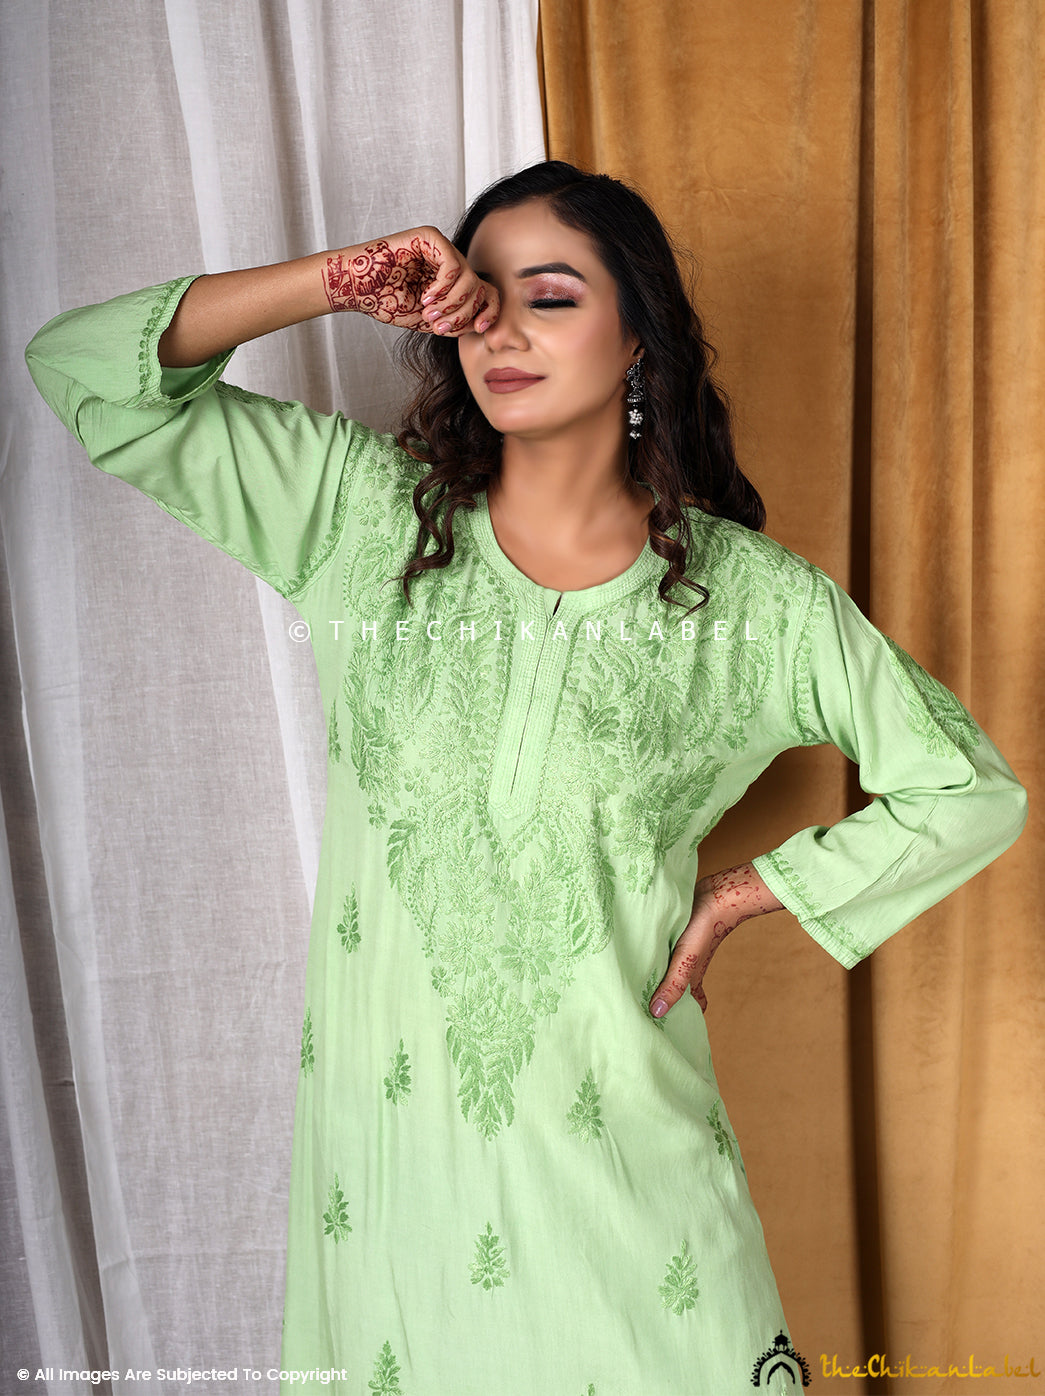 Green Modal Straight Chikankari Kurti ,Straight Chikankari Kurti in Modal Fabric For Woman